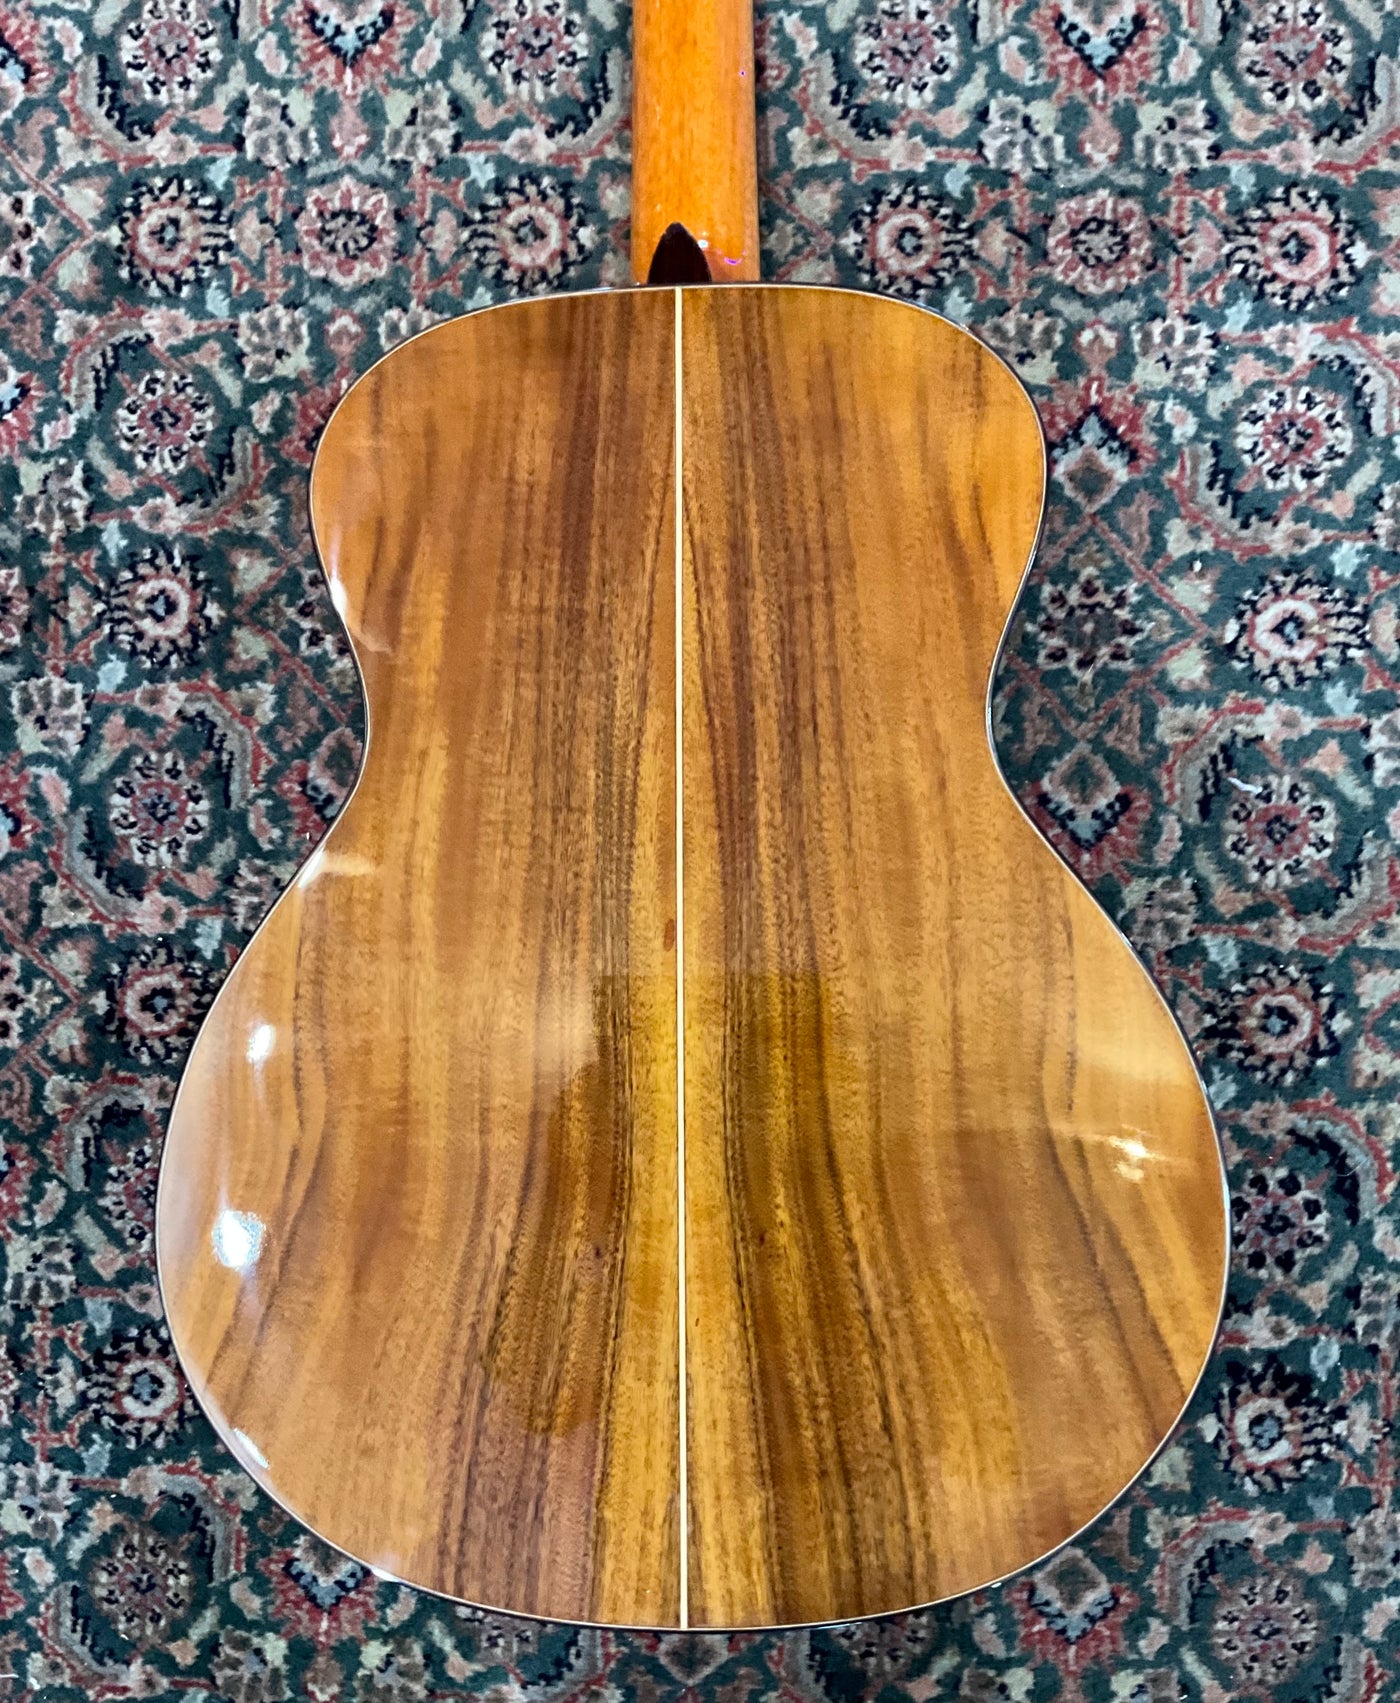 New Byron Koa 12-string A/E